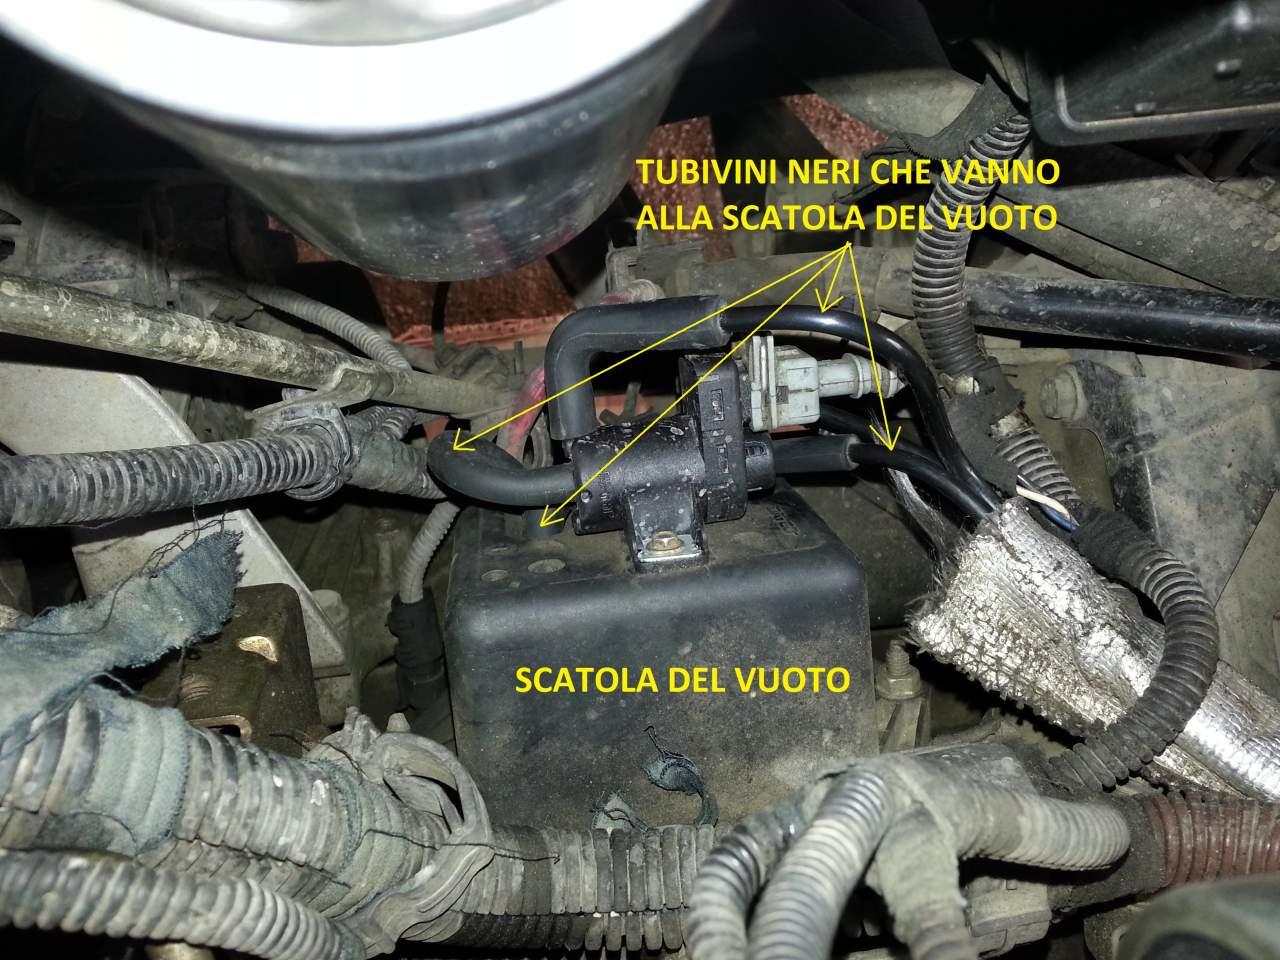 Avarie système contrôle moteur, Alfa 147 jtd 136 ch - Mécanique ...